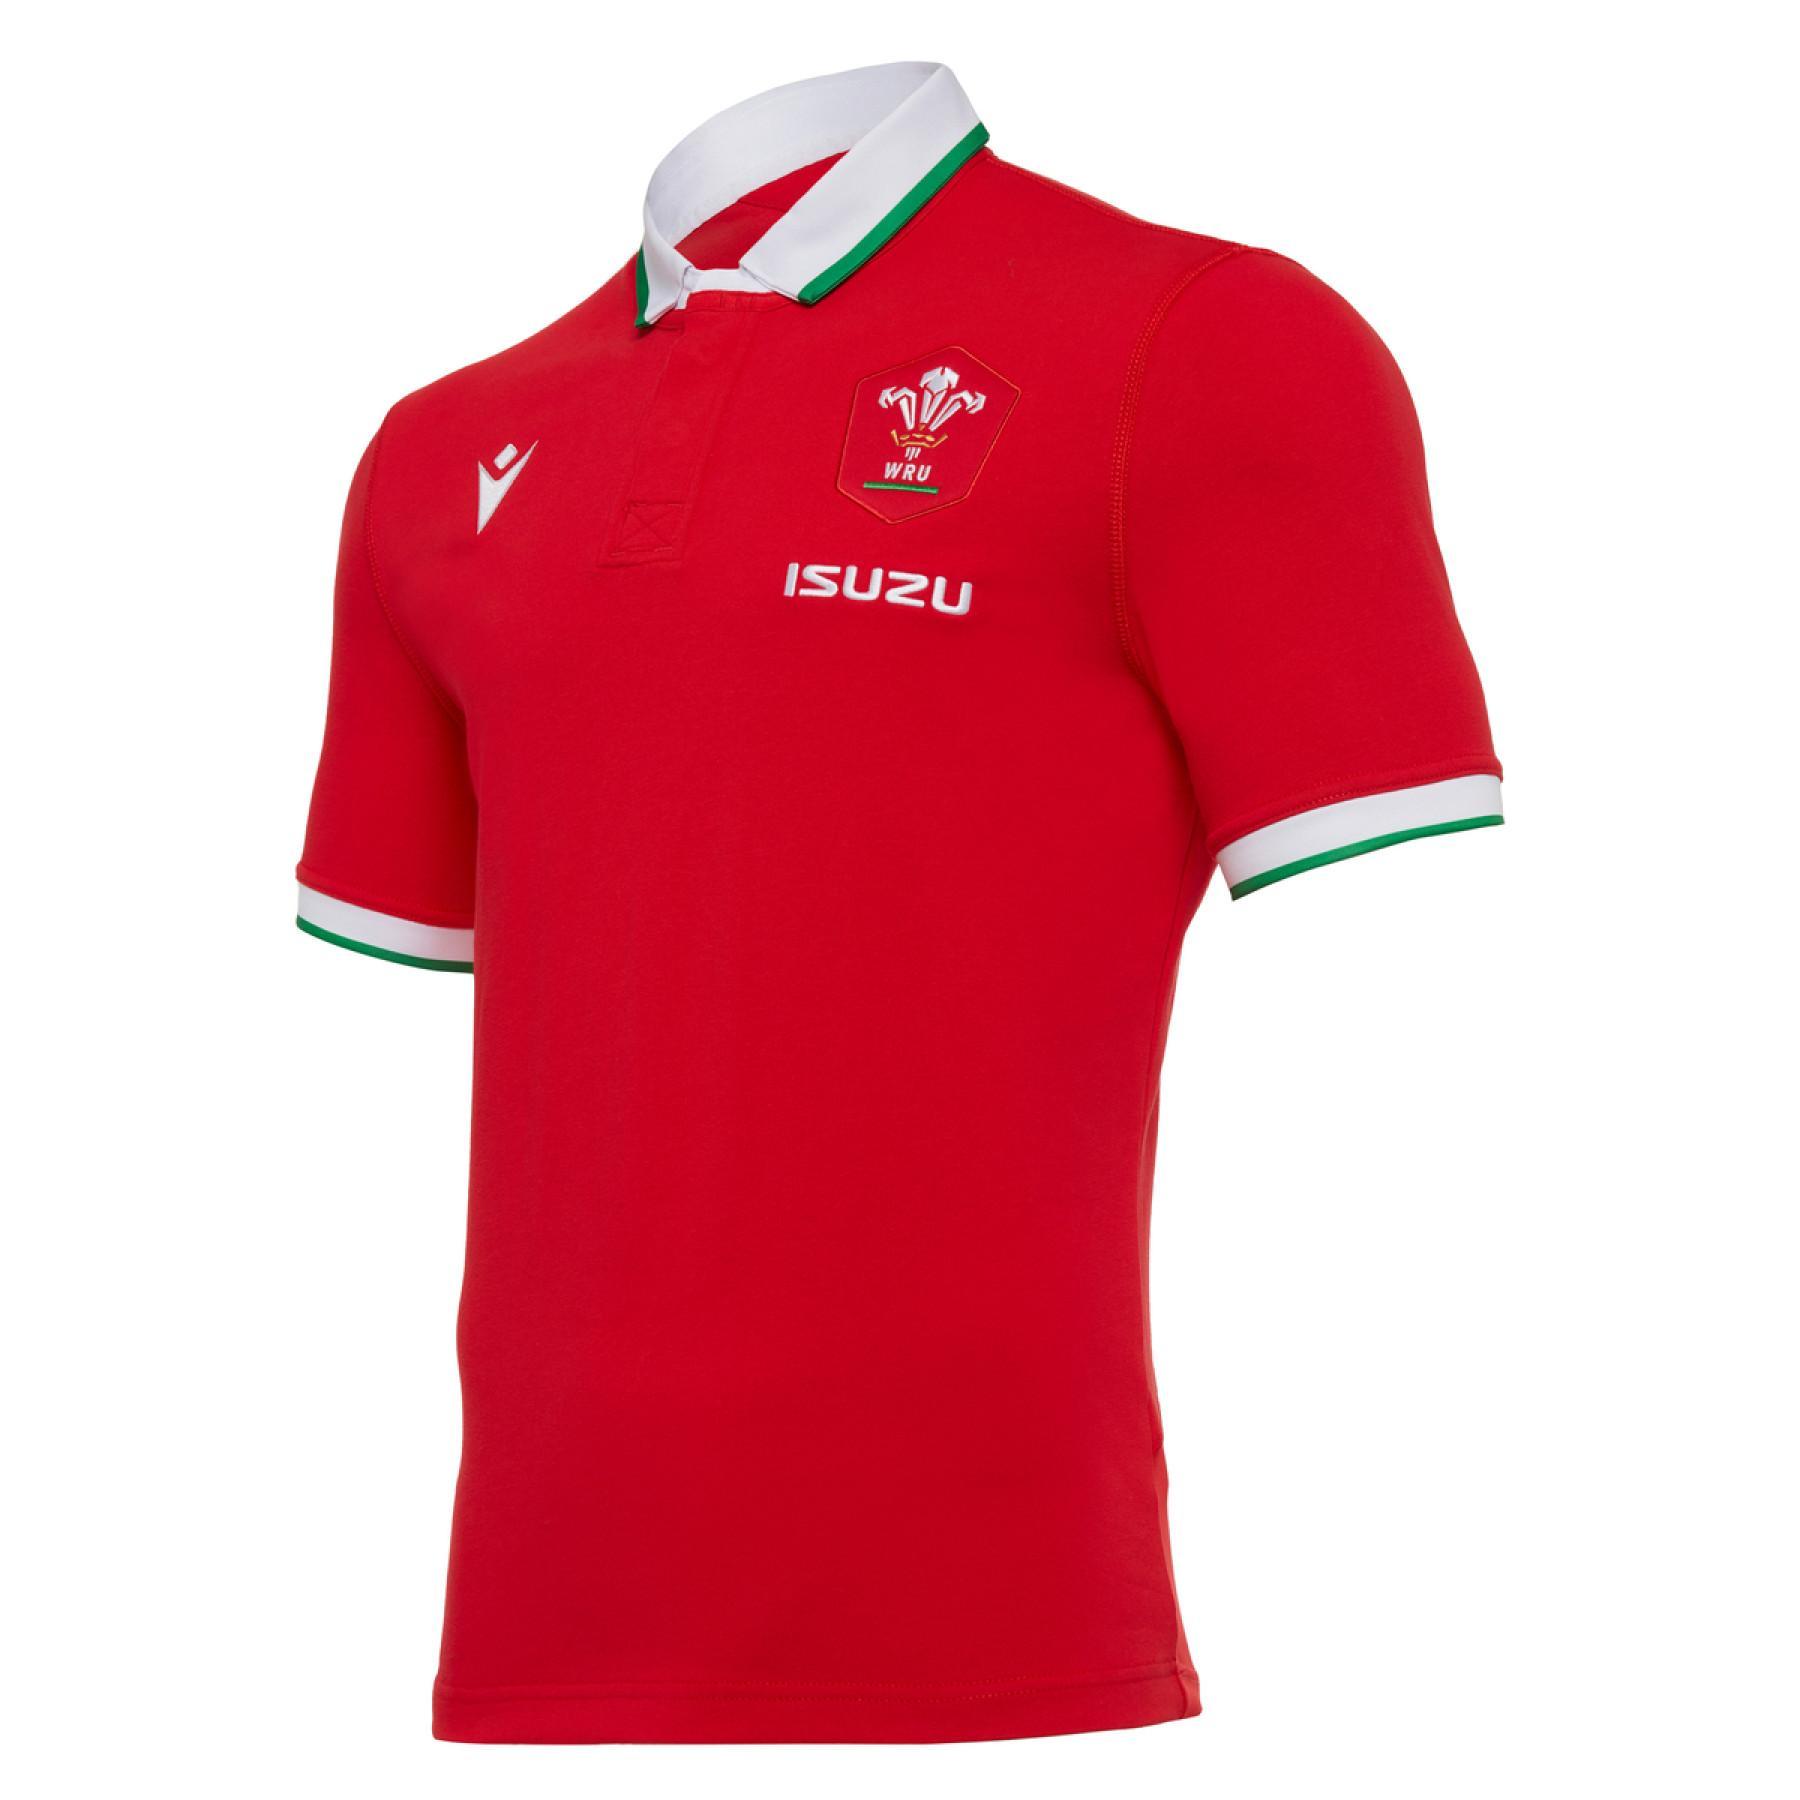 Strona główna bawełna jersey Pays de Galles rugby 2020/21